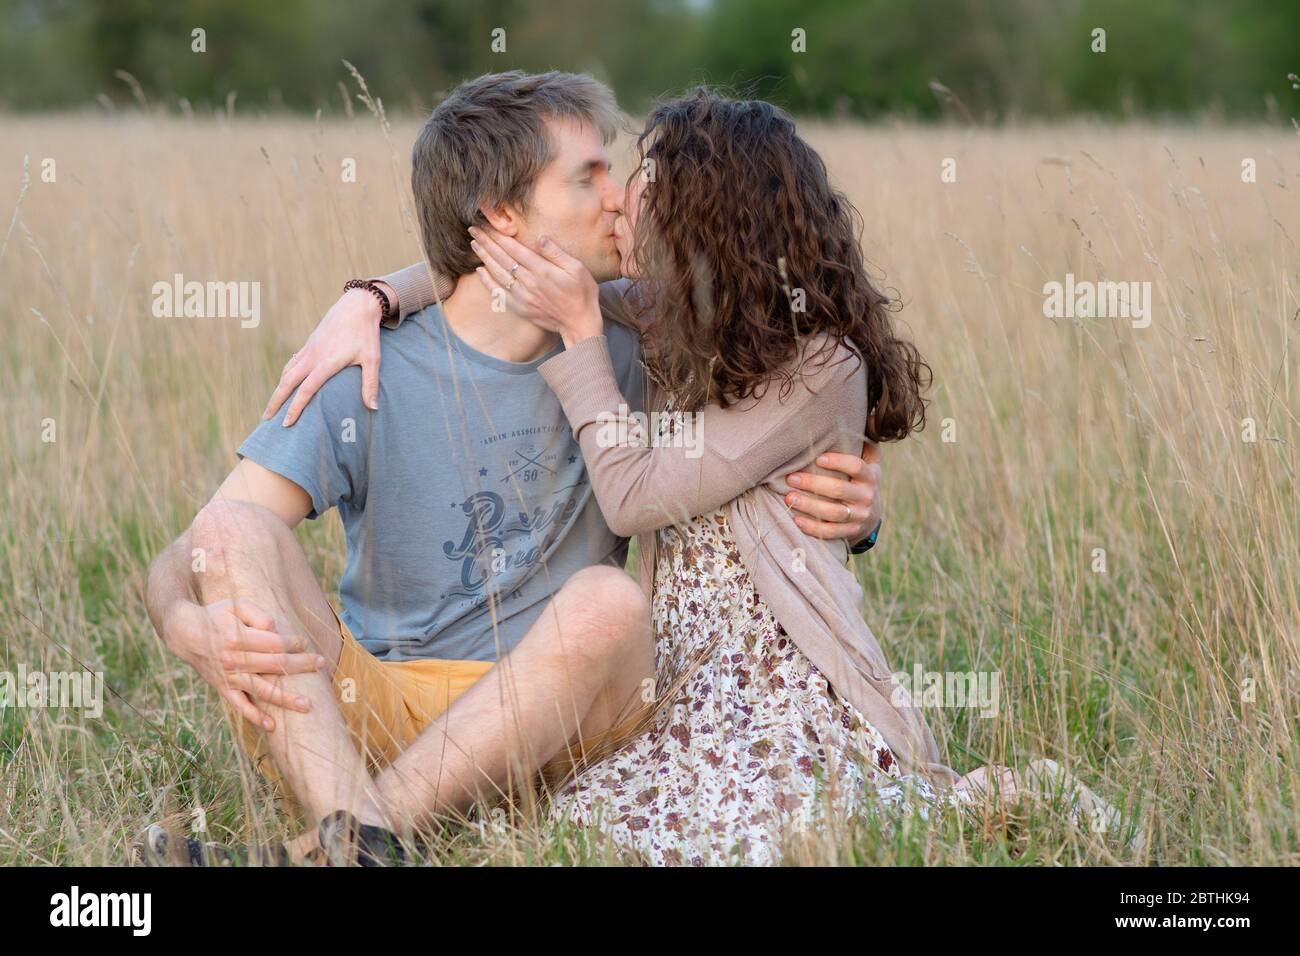 Un jeune beau couple séduisant sourire ensemble dans un beau champ extérieur montrant leur amour pour les uns les autres et embrassant Banque D'Images